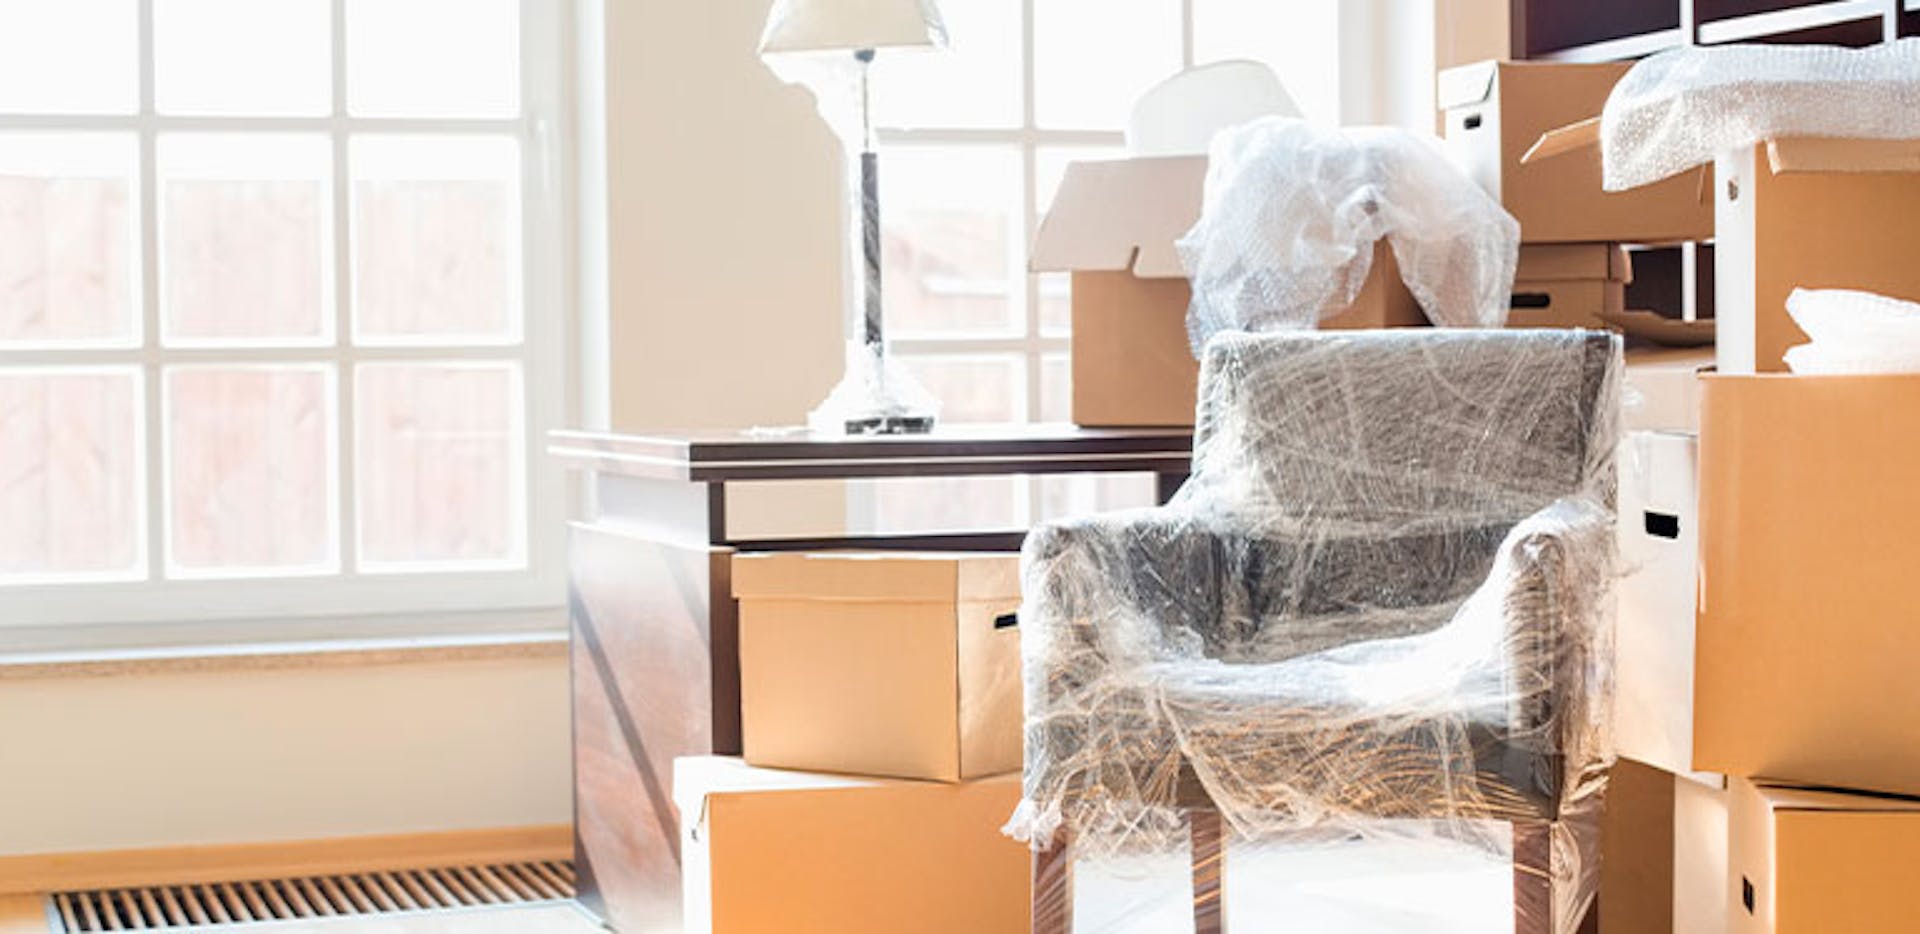 Déménager sans démonter ses meubles : quelles solutions ?